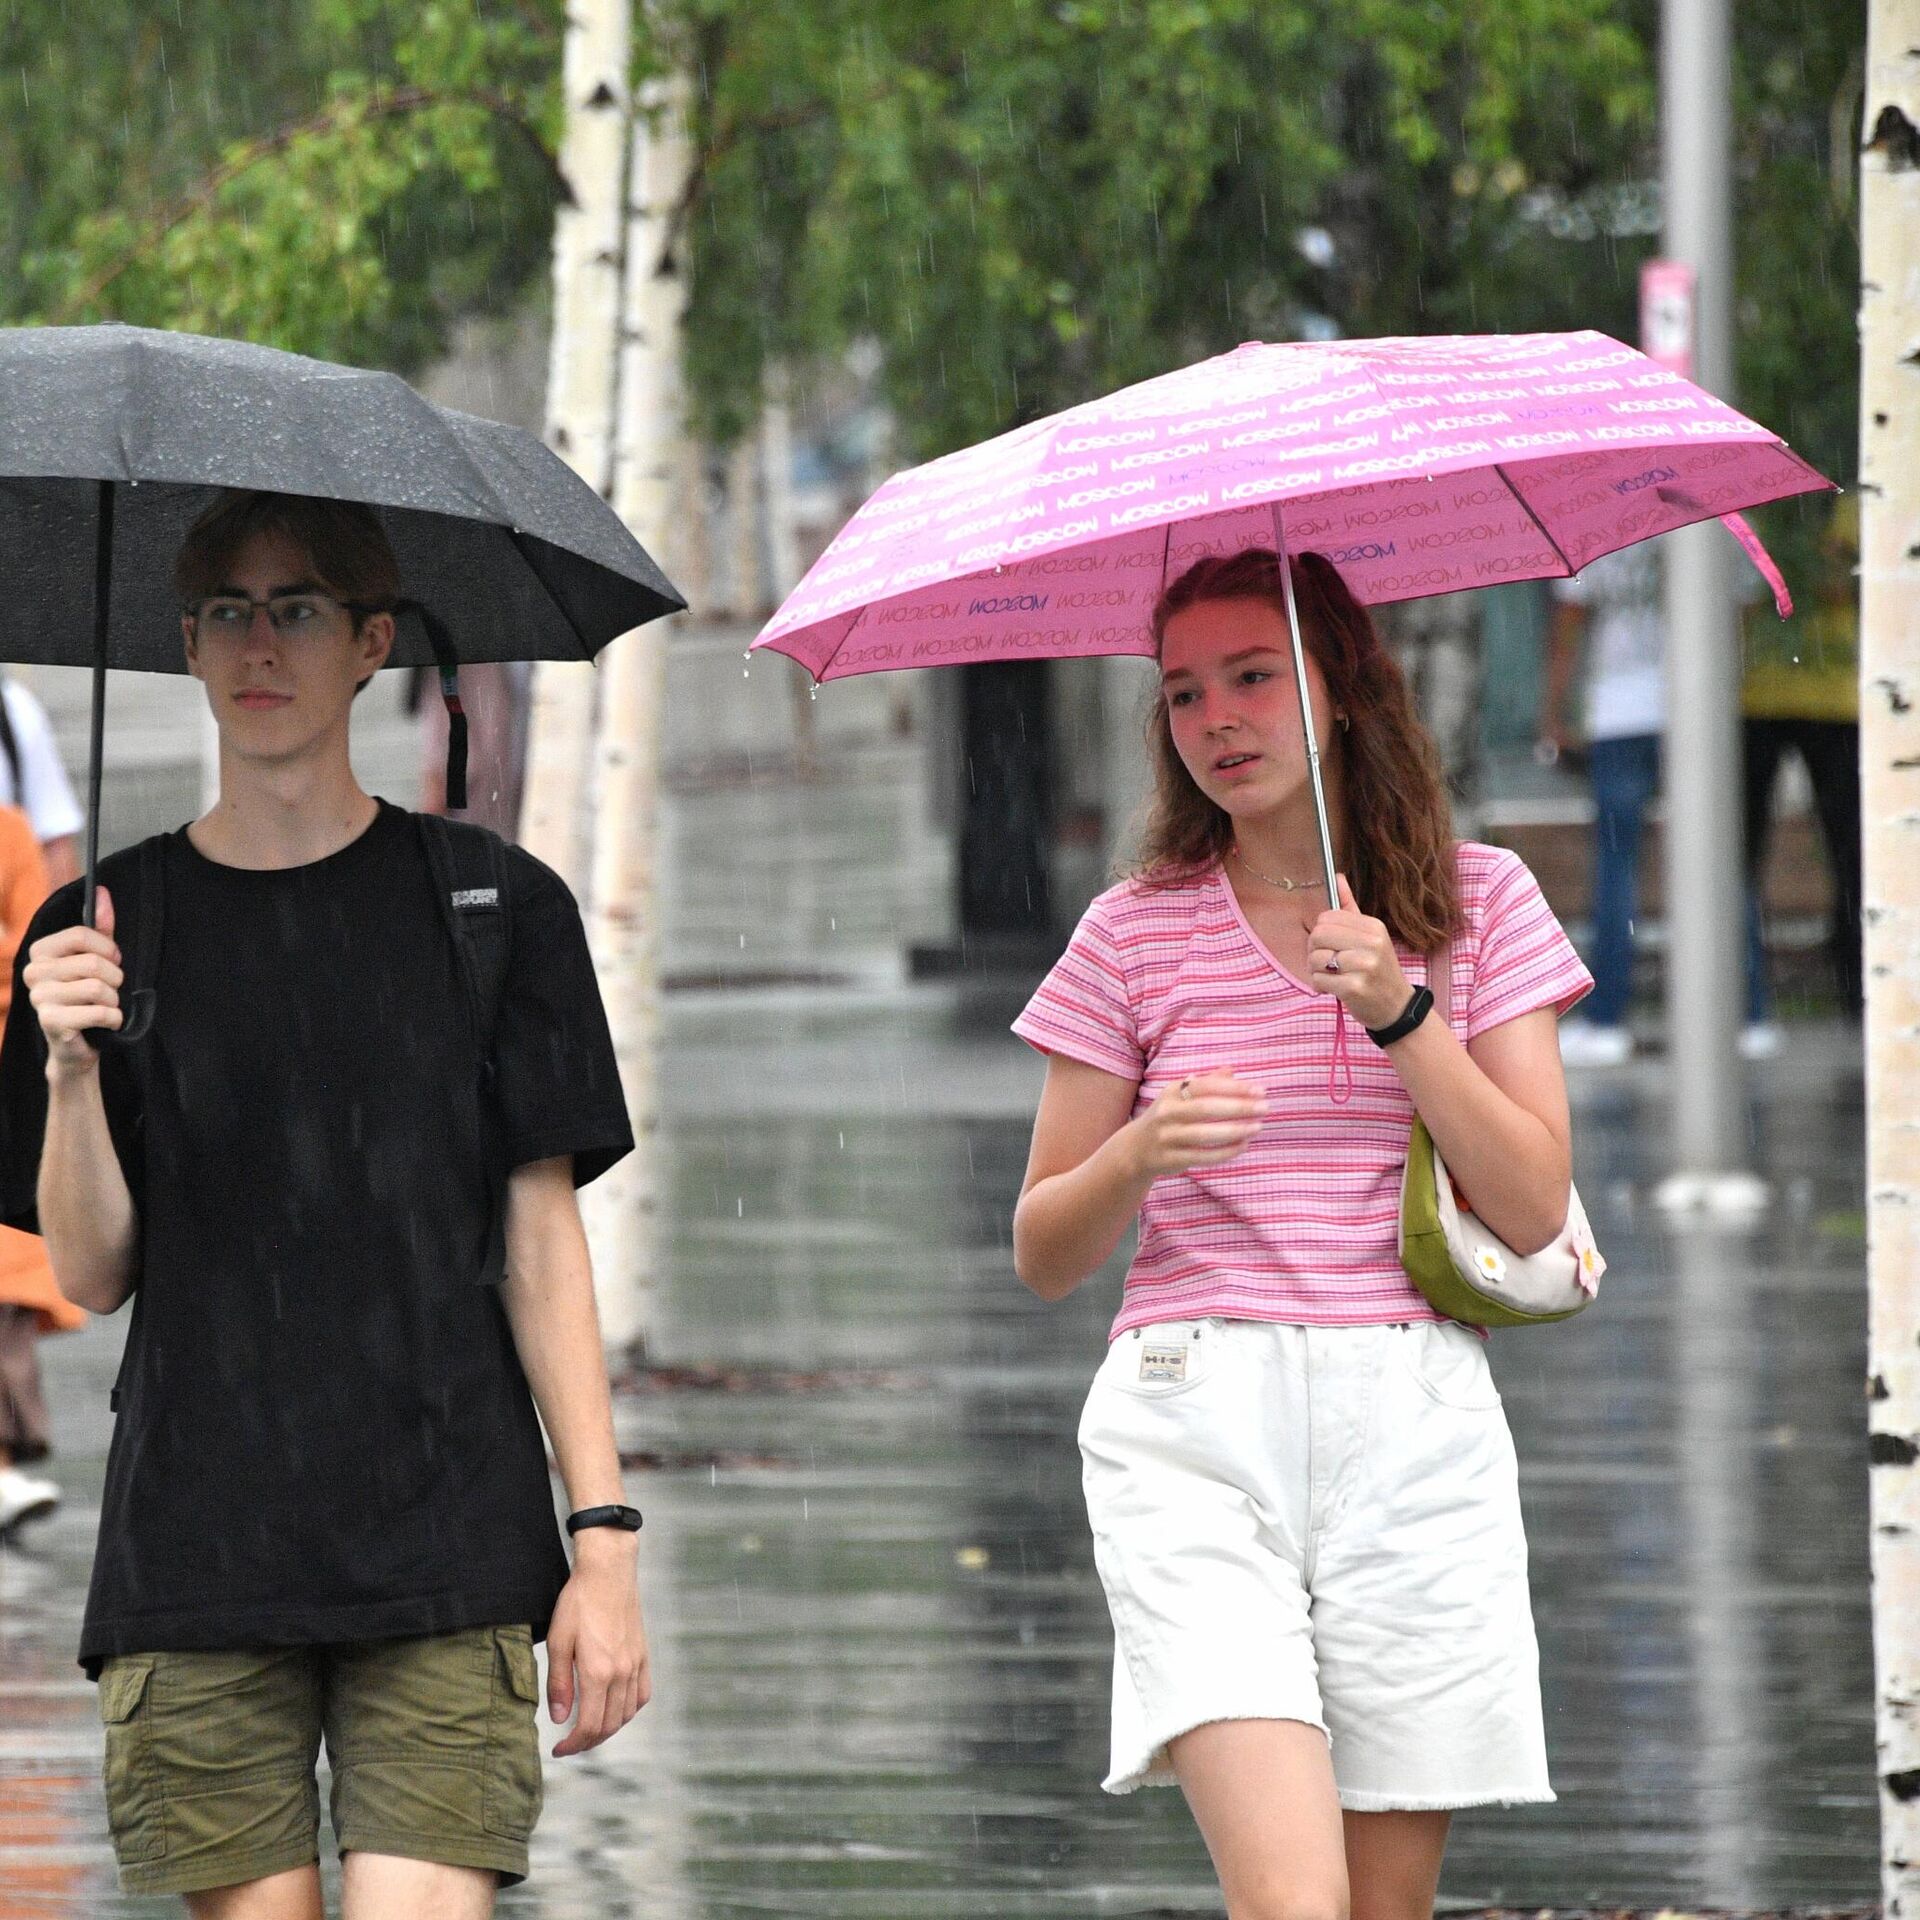 Забыли зонтик. Дождливое лето. Человек под дождем. Летний дождь фото. Улица с зонтами.